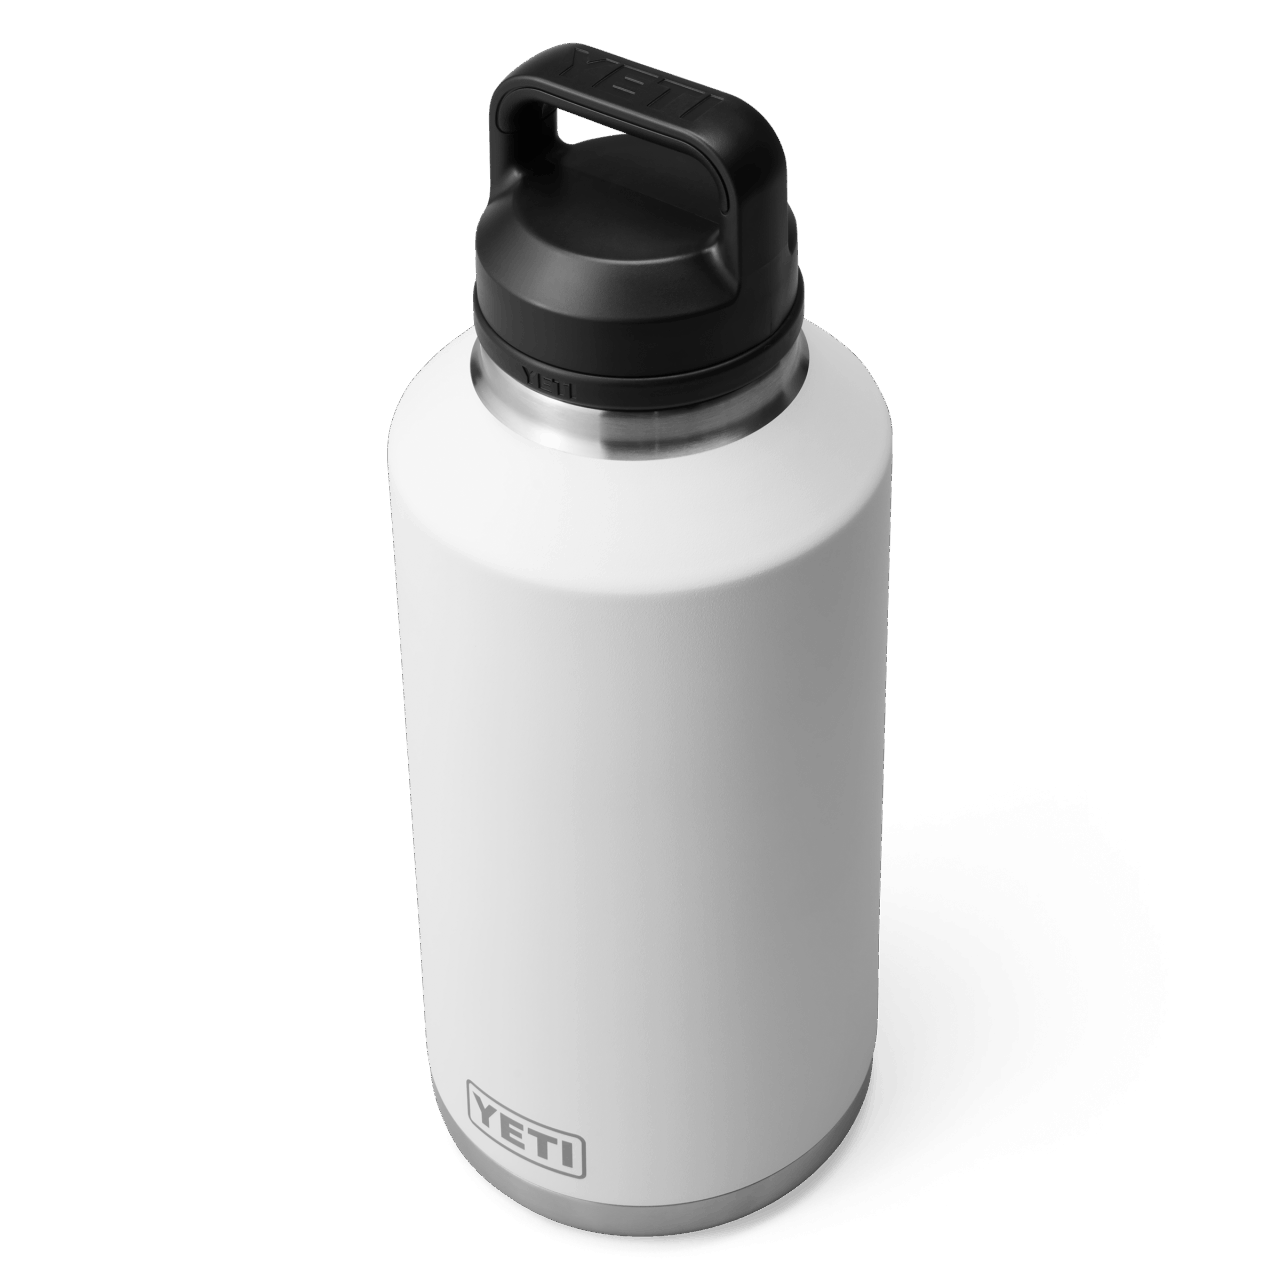 YETI Rambler 64 oz (1,9l) Flasche - white